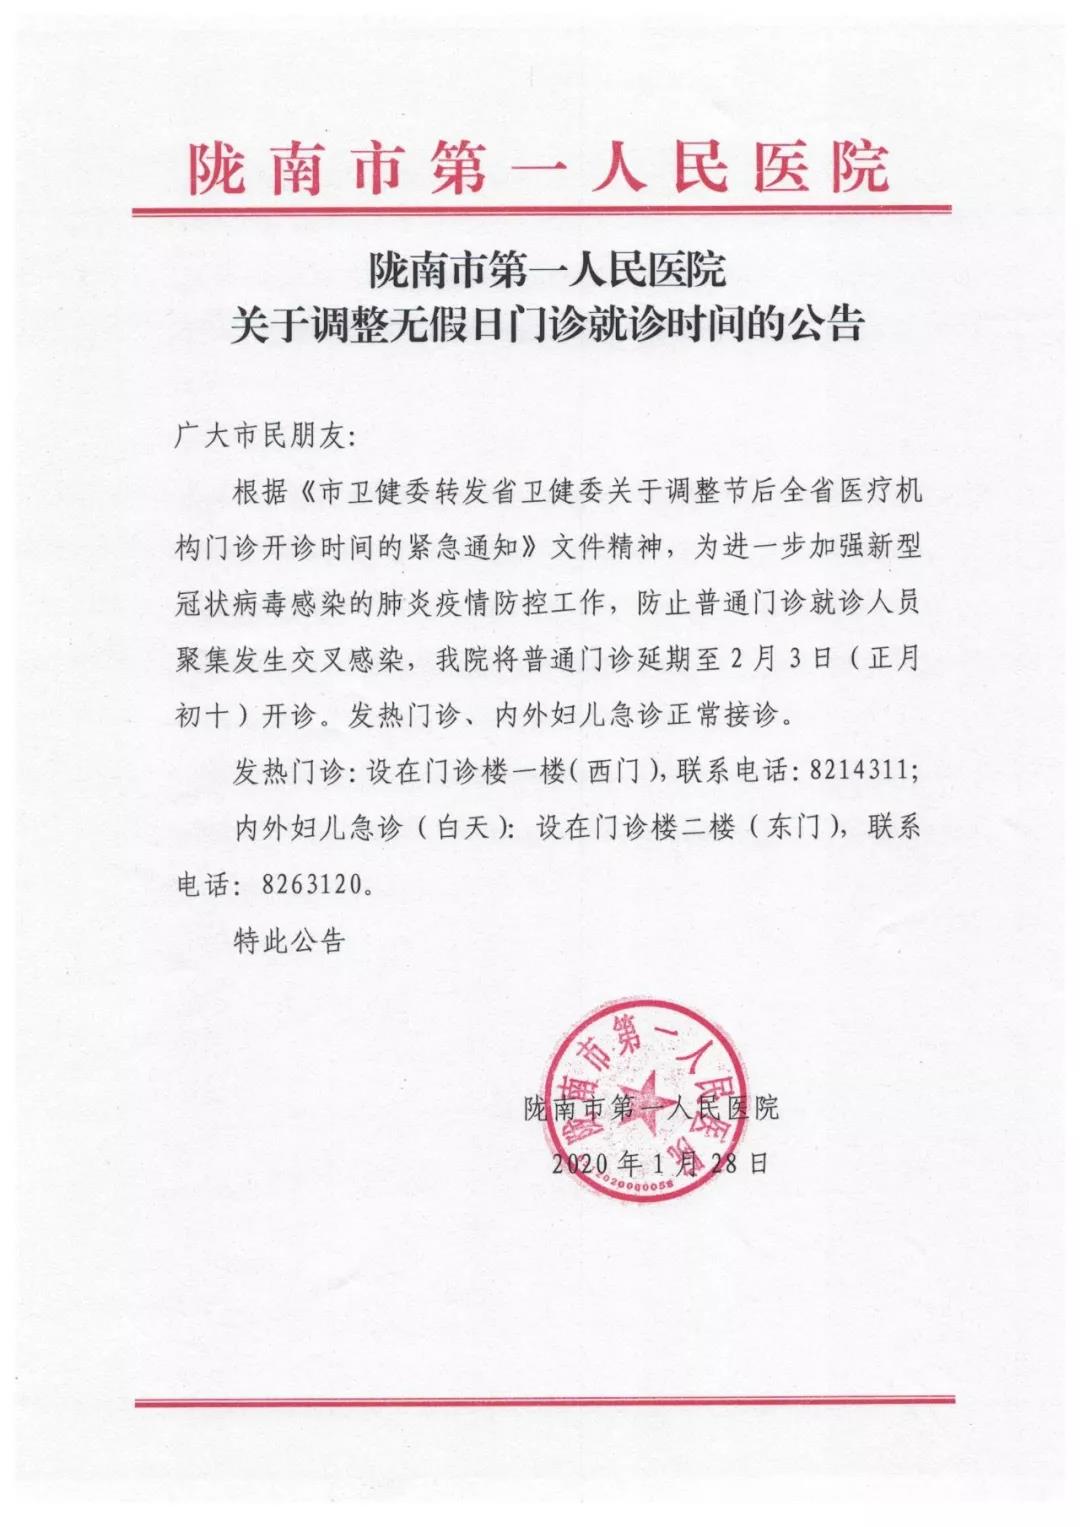 陇南市第一人民医院关于调整无假日门诊就诊时间的公告